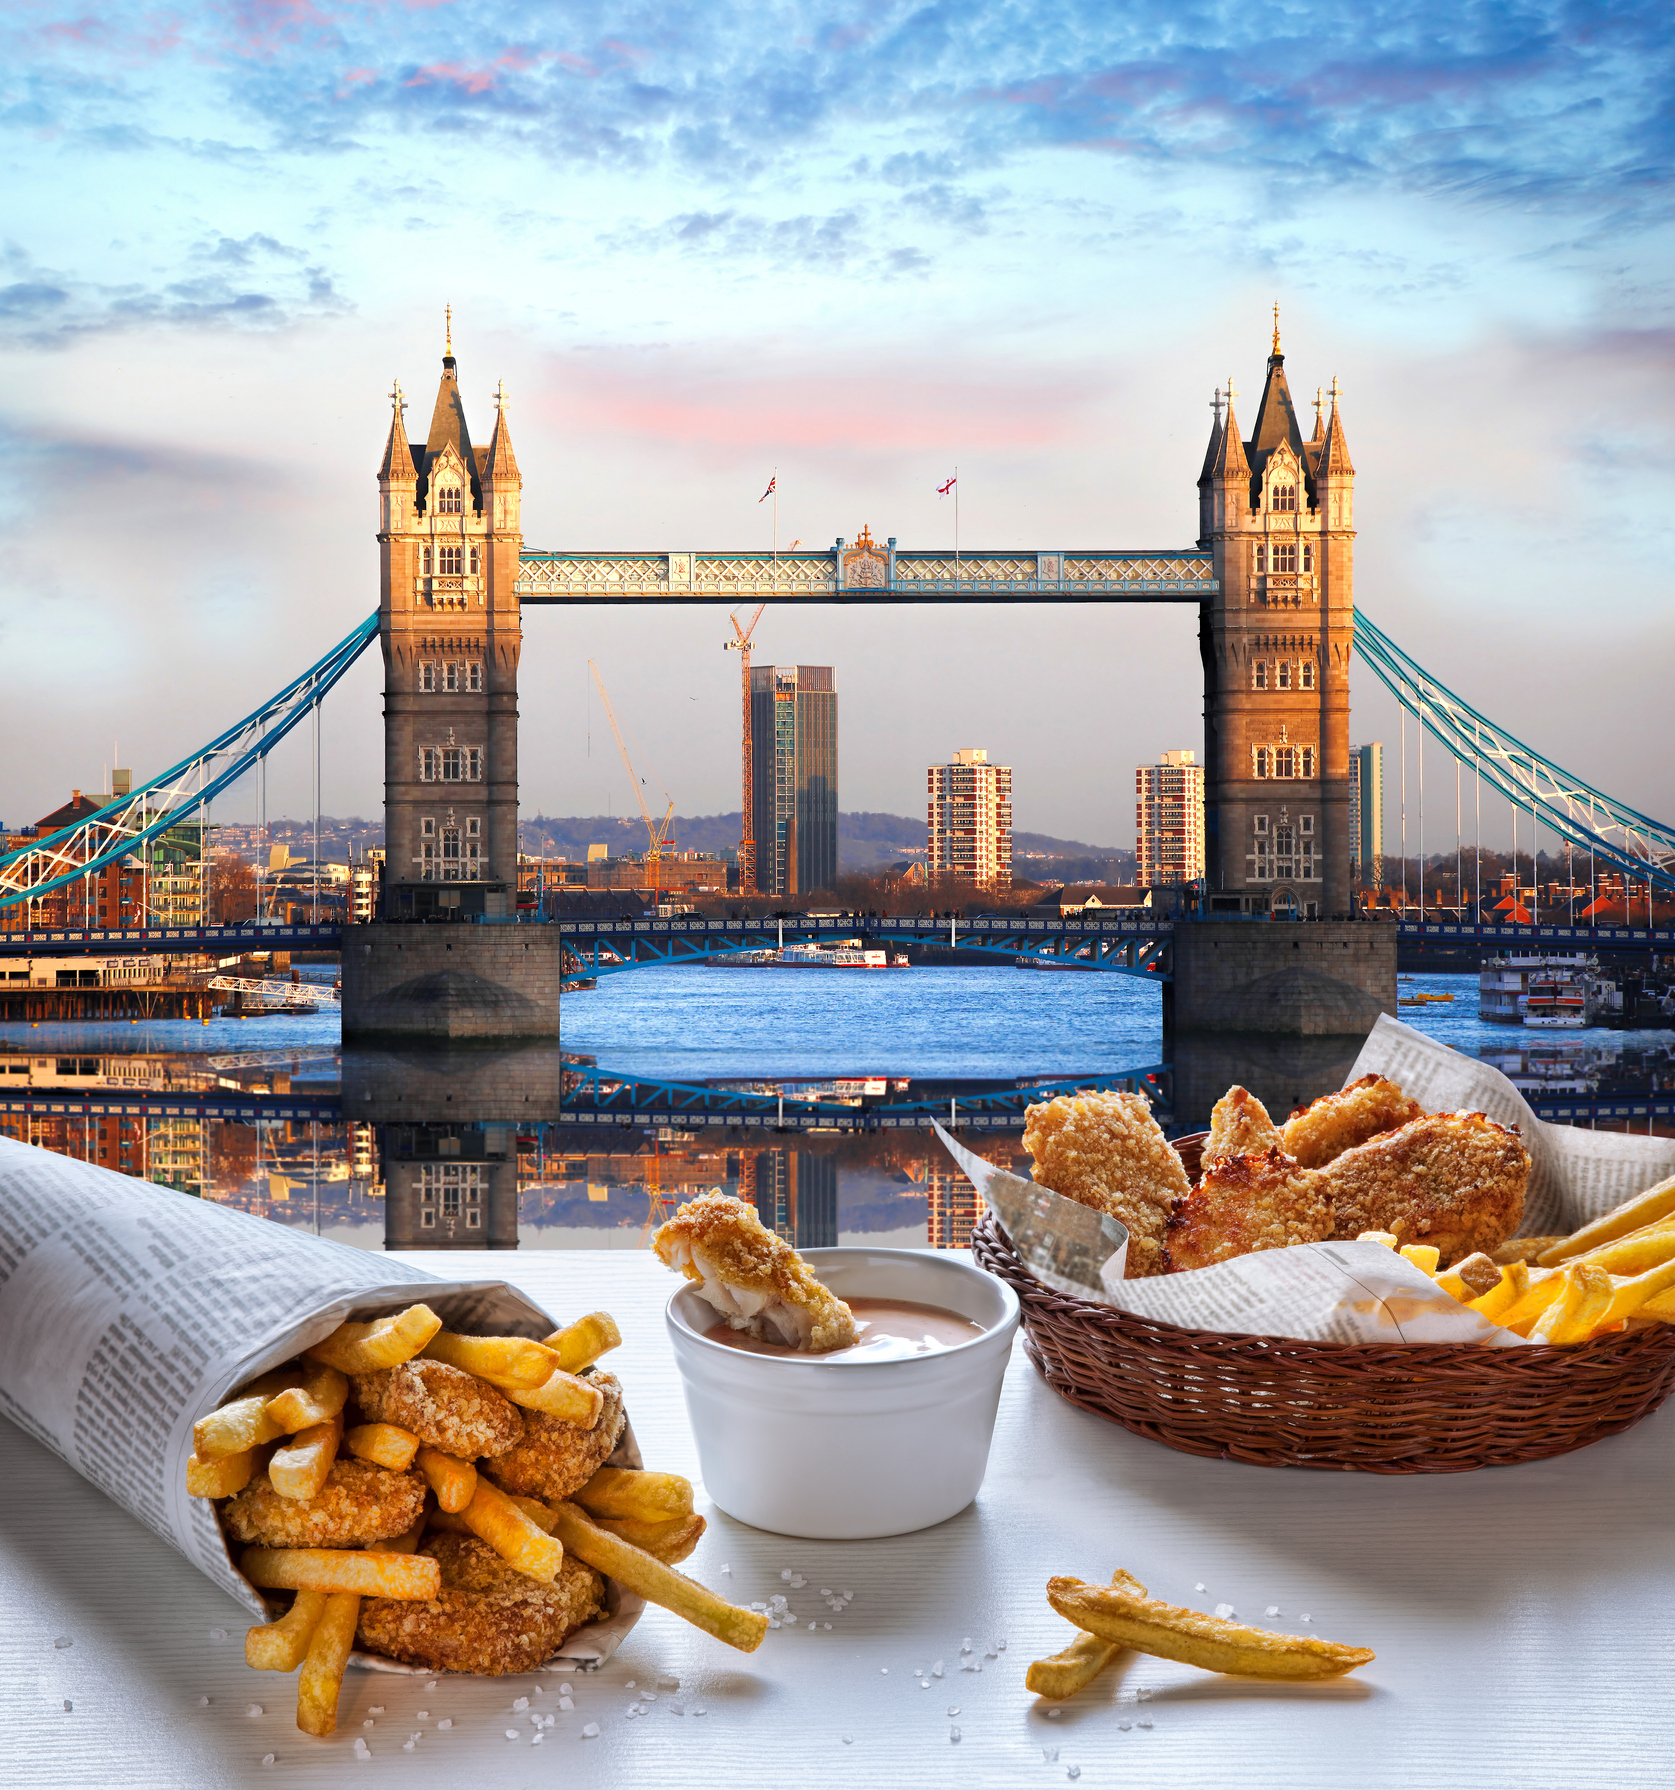 1. Лондон<br>
<br>
Открийте британската култура на храна, като изследвате оживения пазар „Боро“, в южния край на Лондонския мост. Доставчиците предлагат всичко: прясно уловени морски дарове, прясно събрани зеленчуци, занаятчийски сирена и избрани хлебни изделия.<br>
<br>
Не пропускайте традиционни ястия като пълна английска закуска в кафене „Regency“ или риба и чипс в „Golden Hind“. Вечеря със съвременна кухня в „The Hand and Flowers“, единствената английска кръчма с две звезди на Мишлен. Имате ли настроение за приключения?<br>
<br>
Посетете карусел която има готвачи и концепции за ротация.